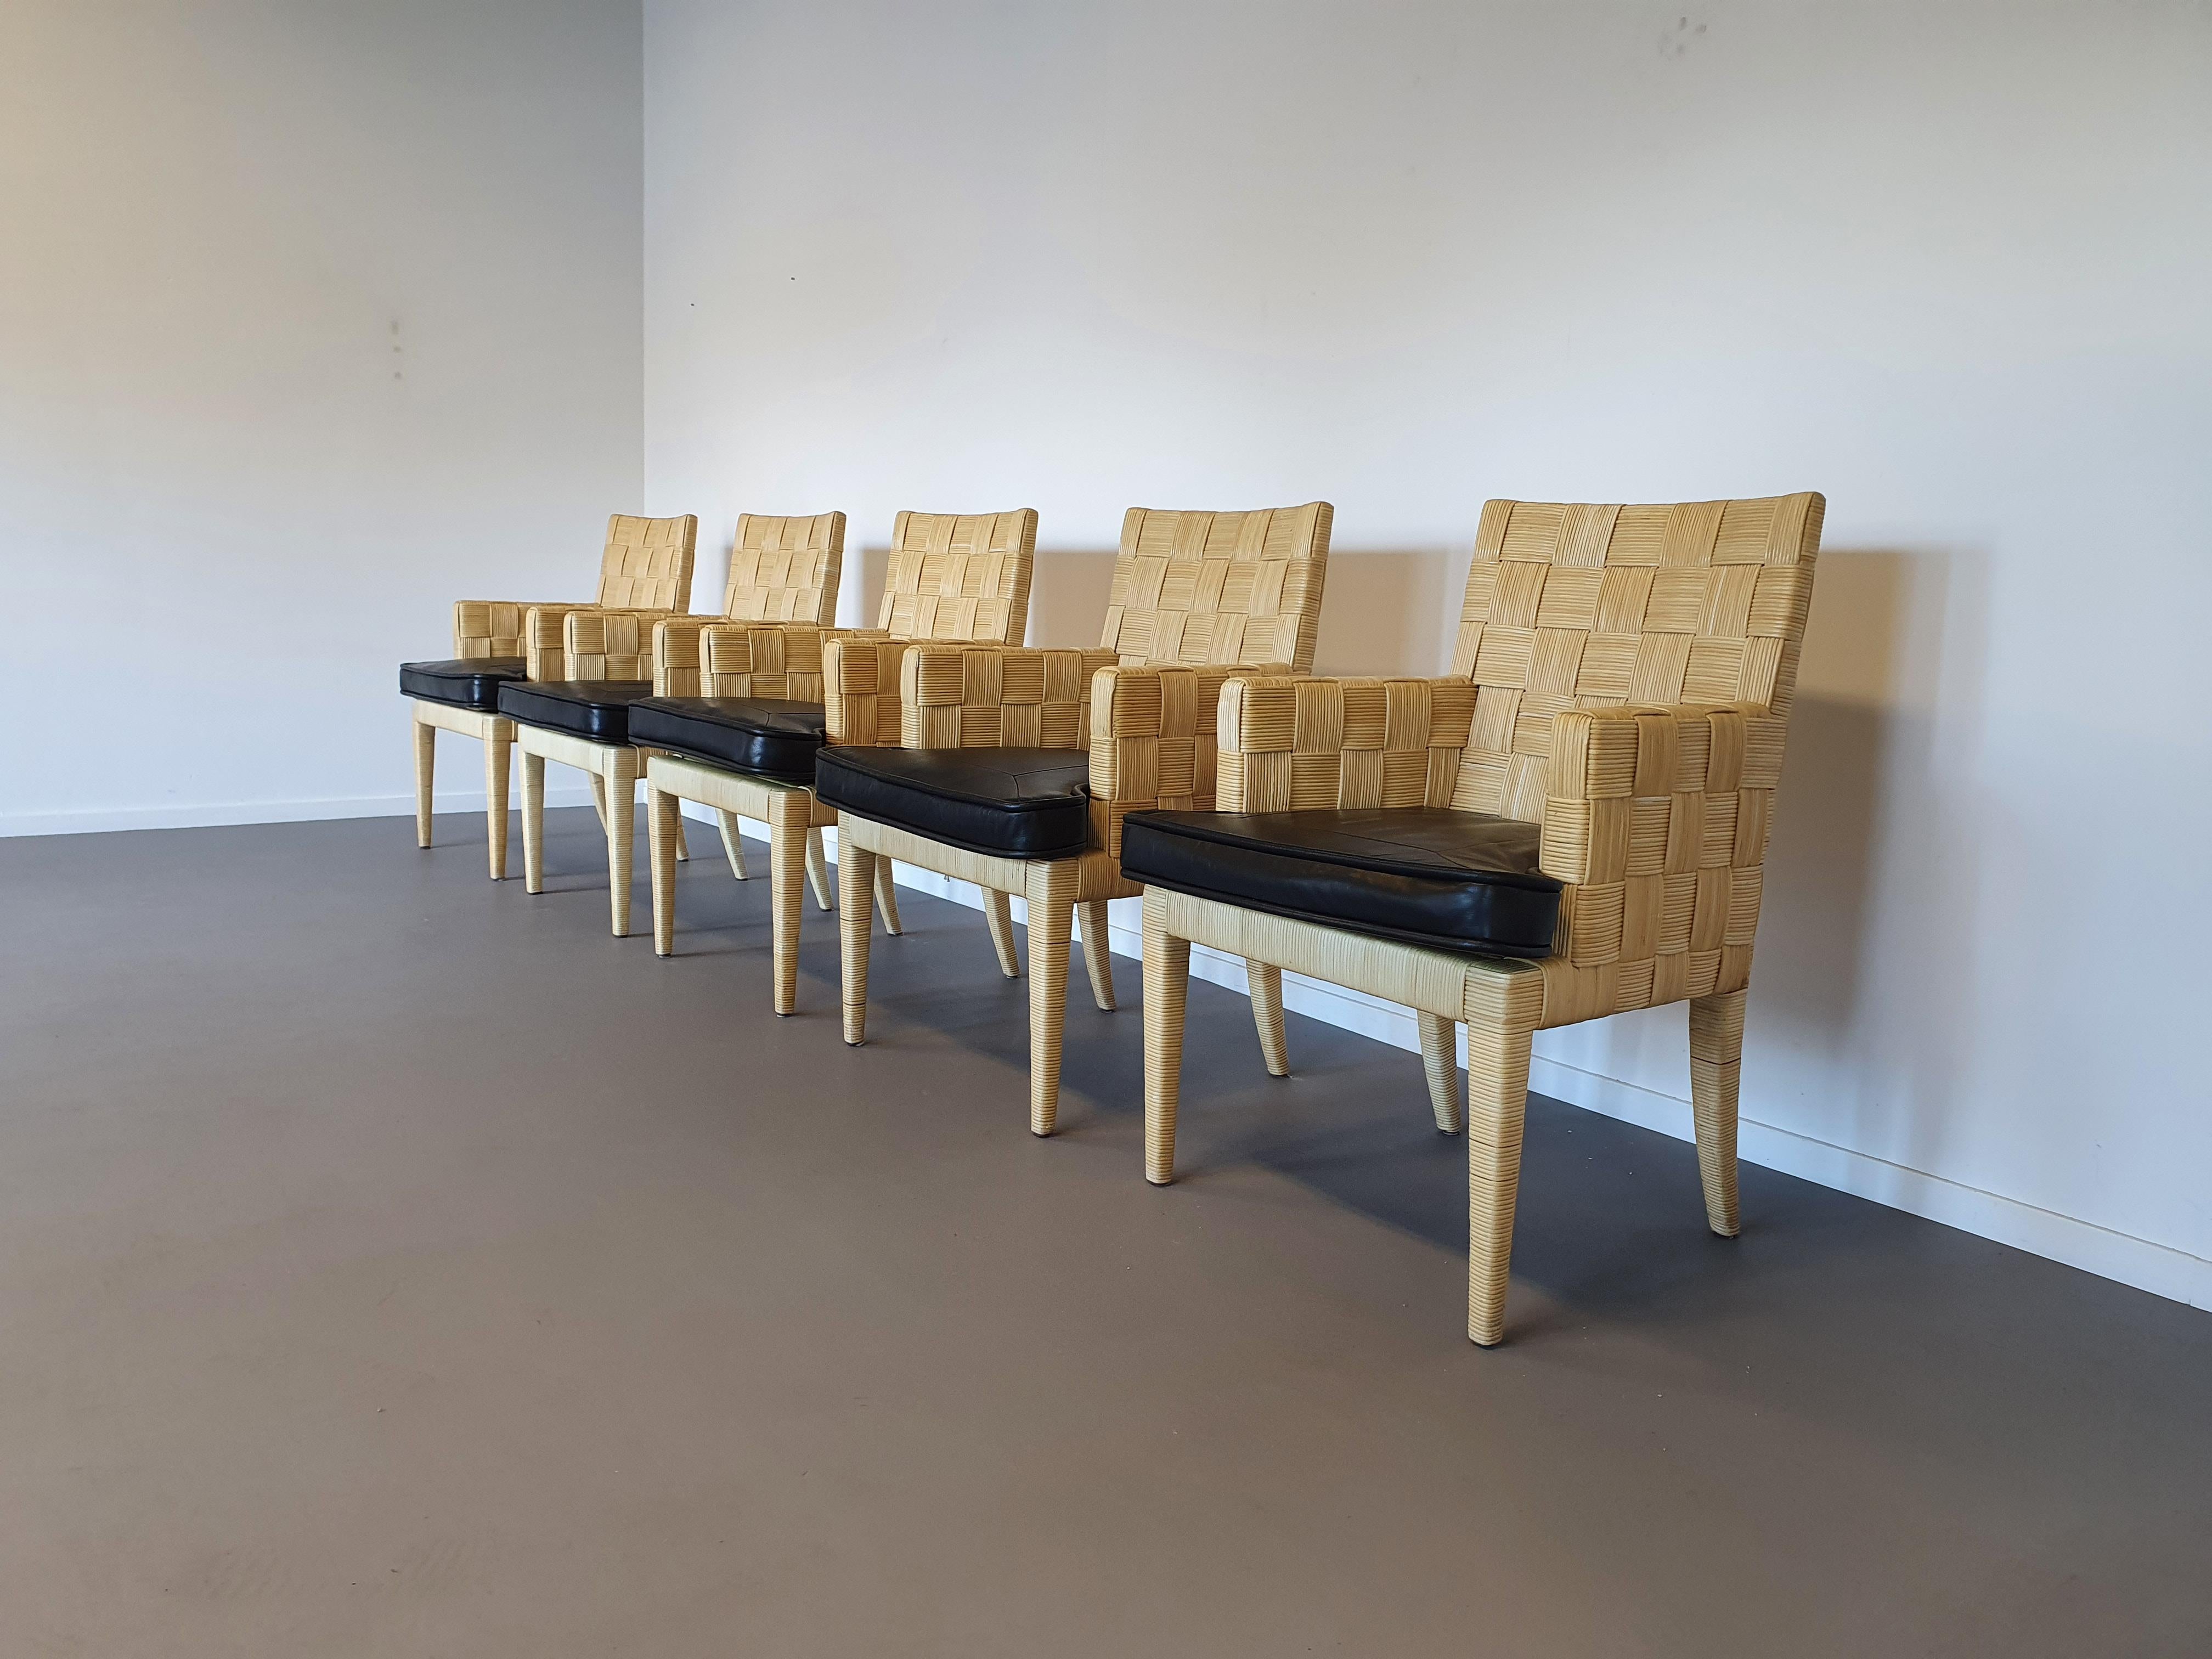 Donghia Block Island Stühle 1990er Jahre mit Ledersitzen. 5 x Armlehnen, 2 x ohne von John Hutton. Die originalen Lederkissen wurden professionell überlackiert
